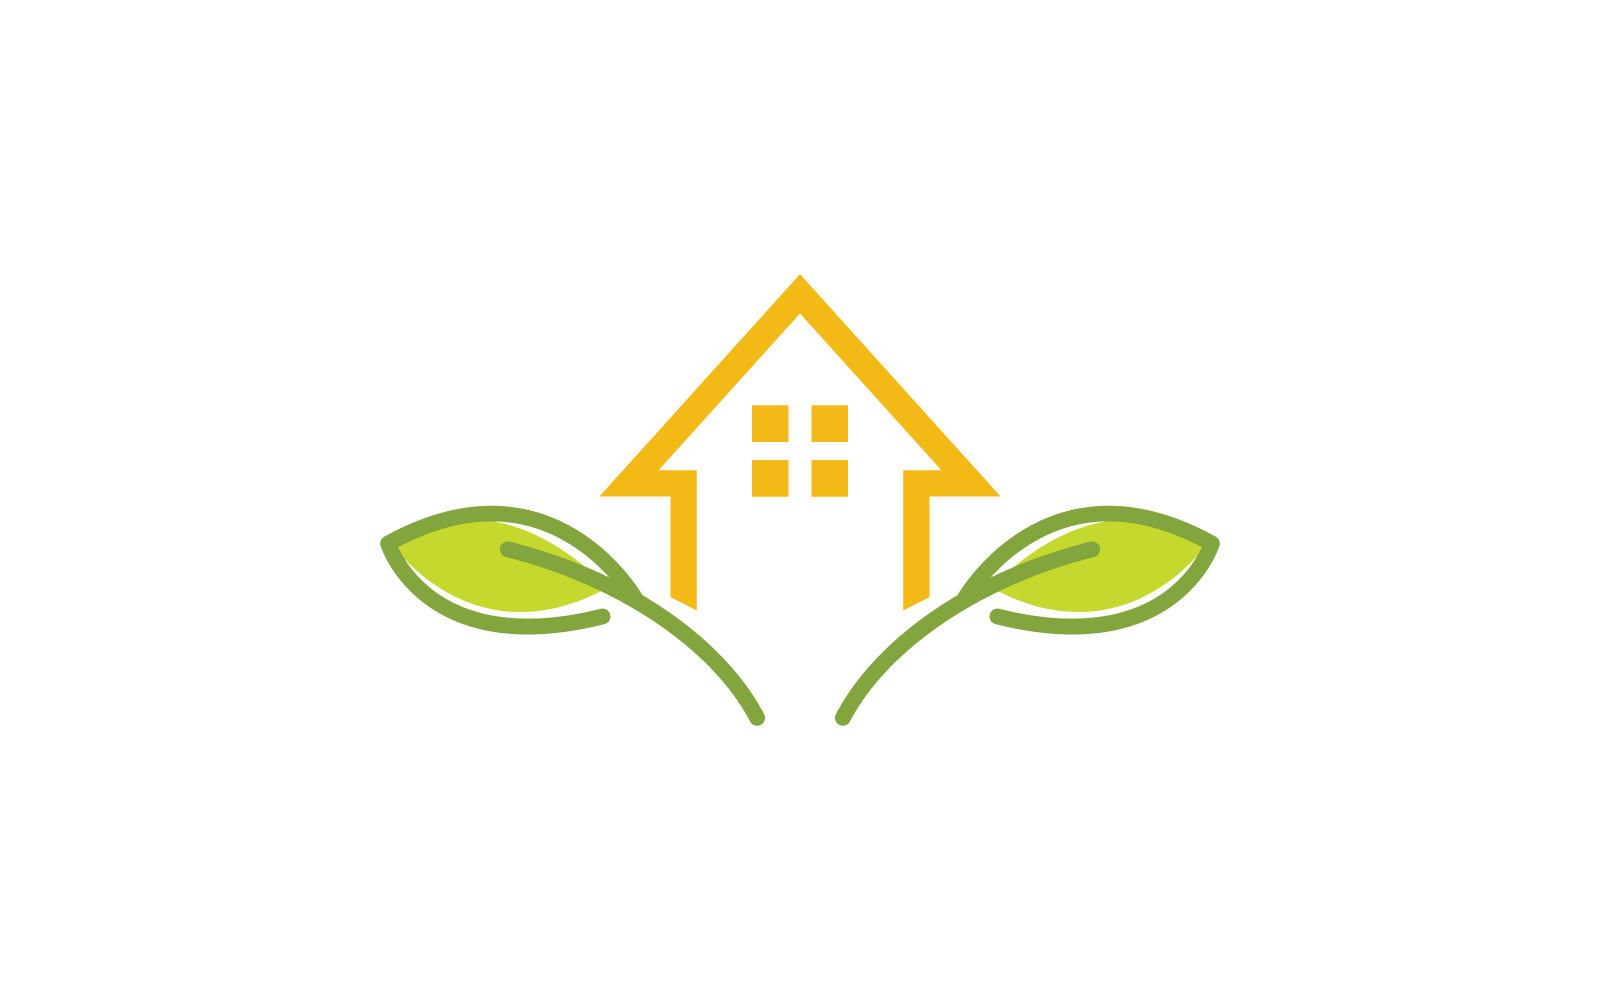 Farm house illustration logo vector template